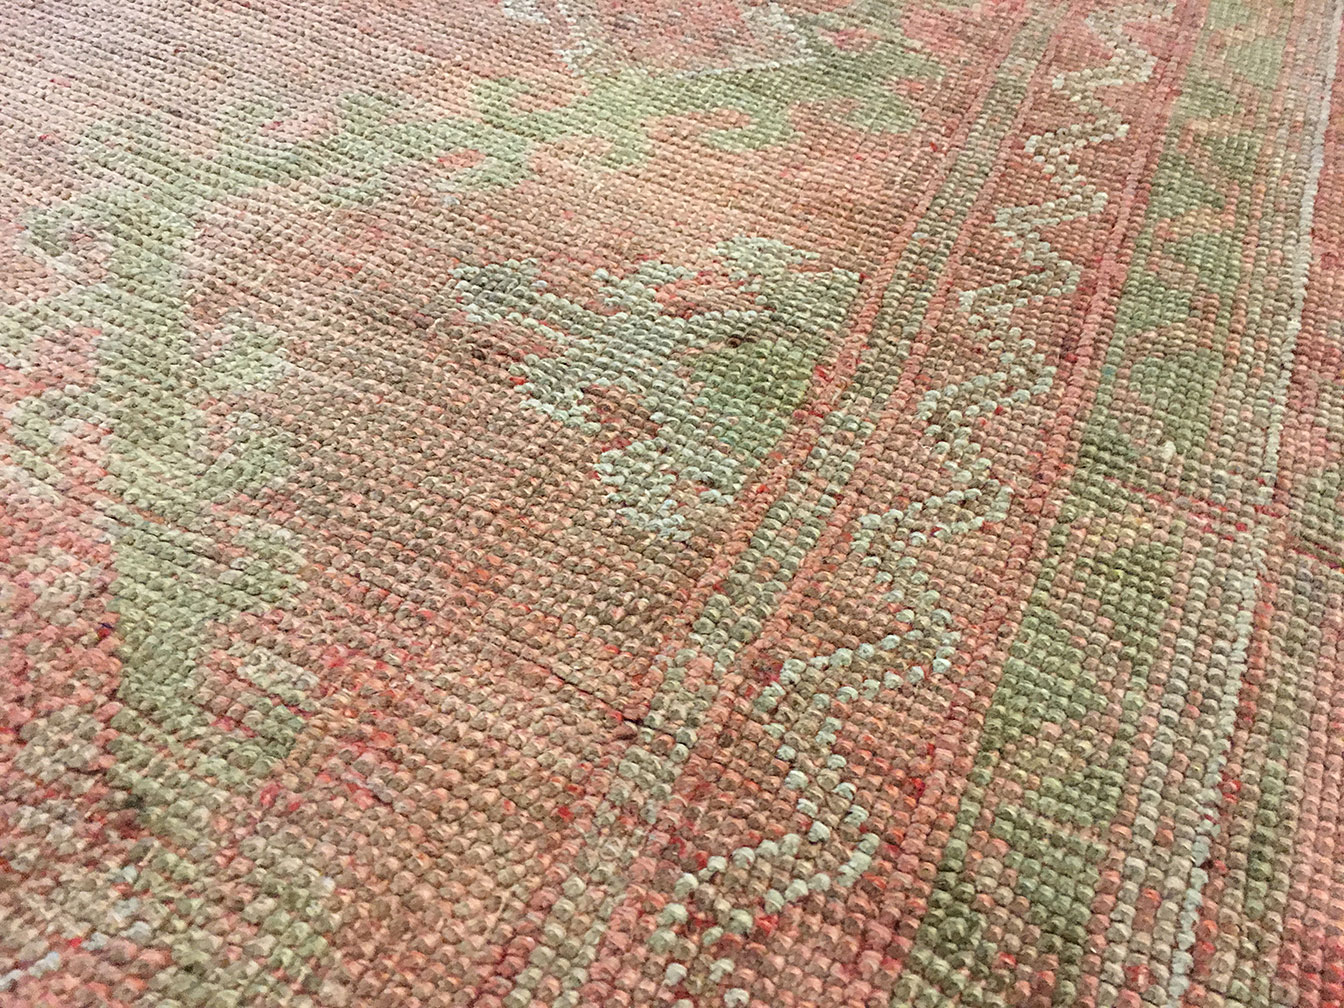 Antique oushak Carpet - # 52972